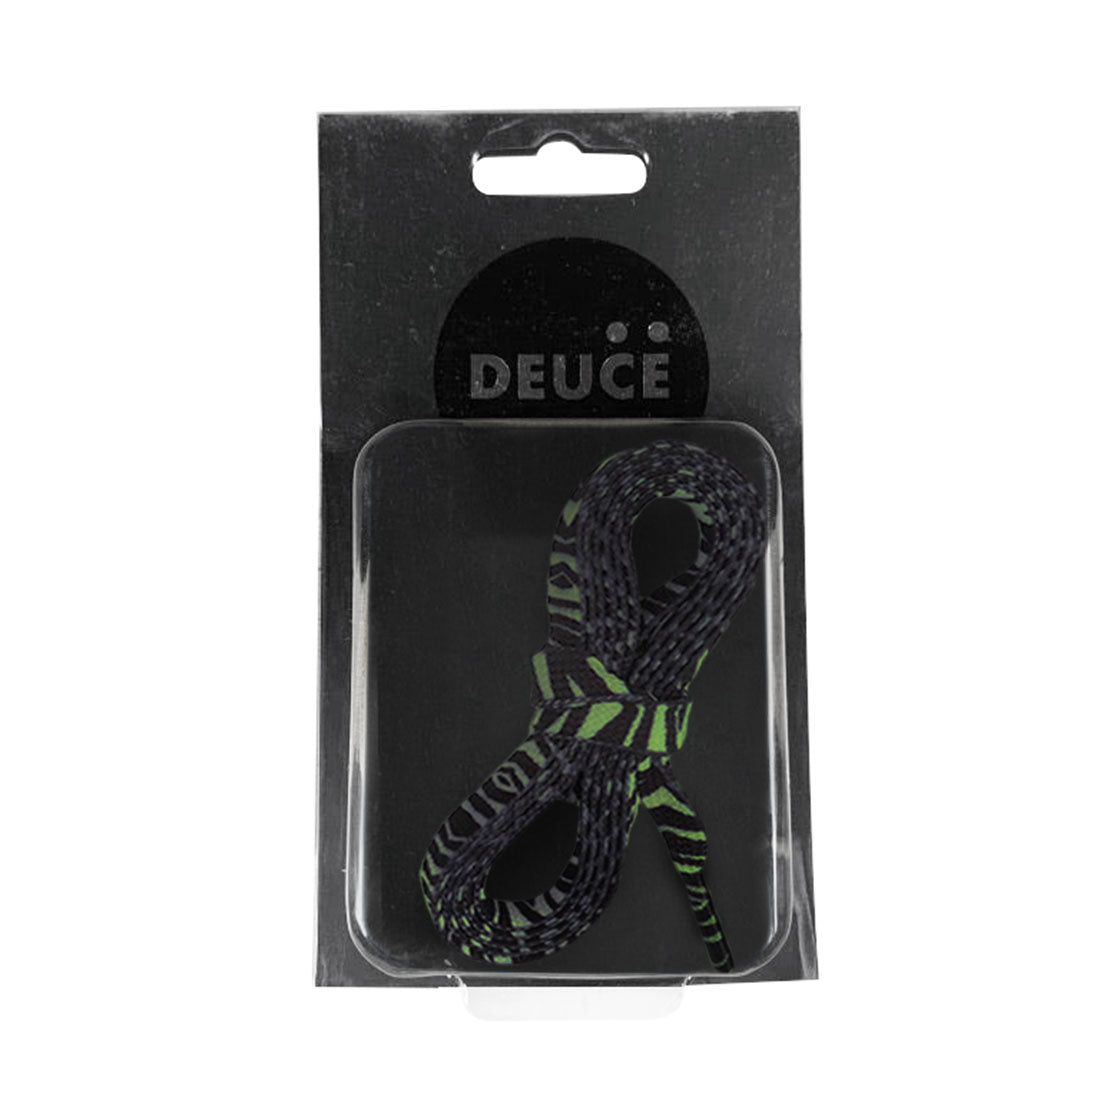 Deuce Zebra Thin Laces - Black/Green Laces